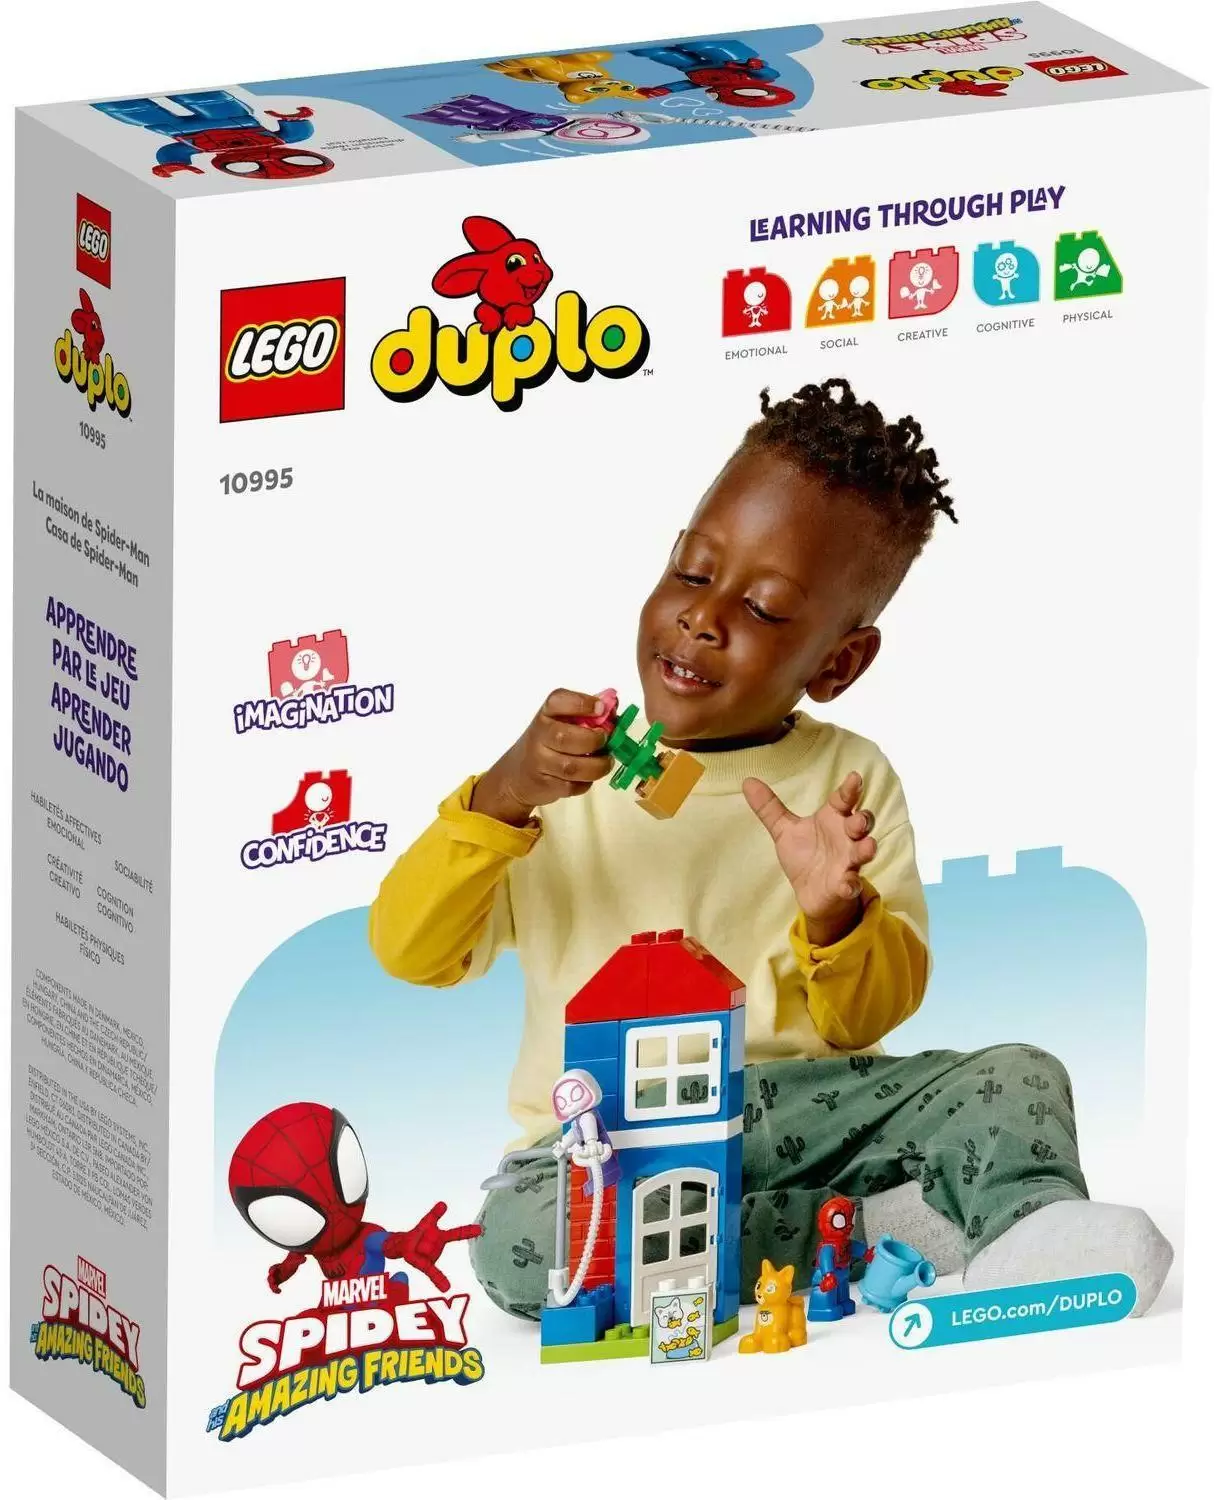 Конструктор LEGO duplo Дом Человека-Паука кор